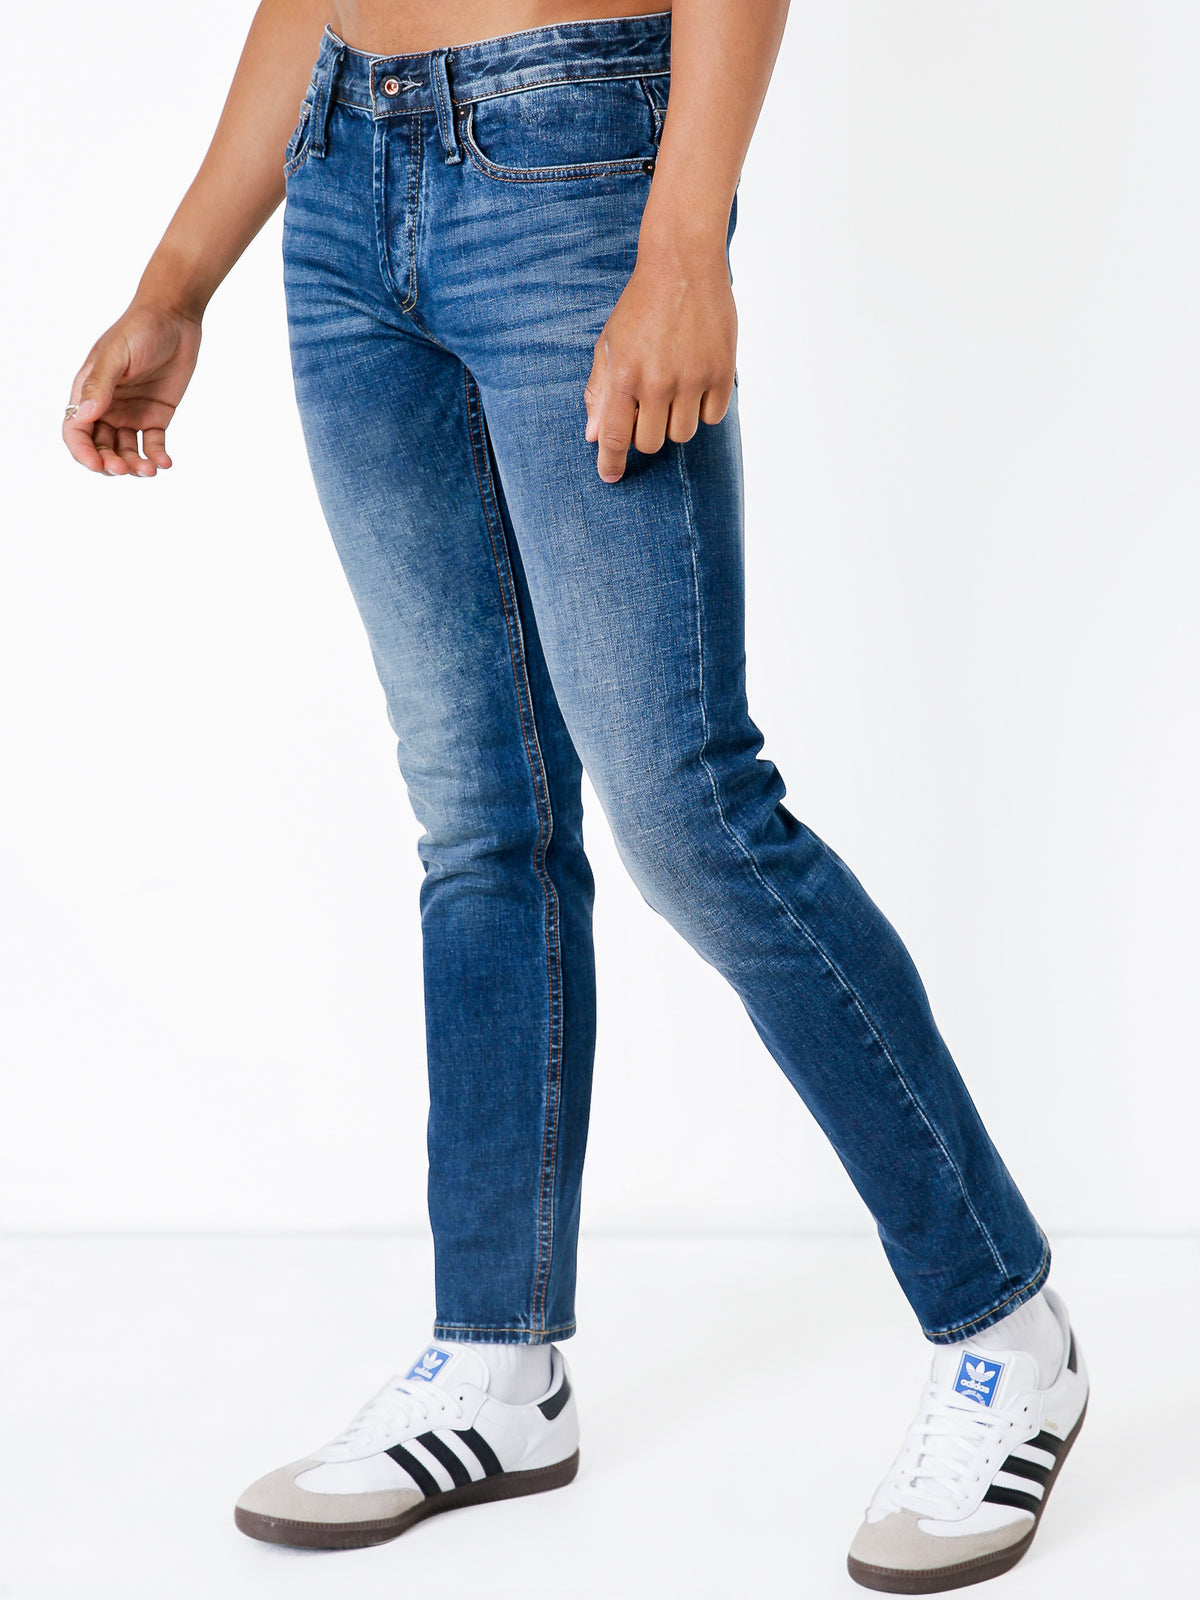 Razor ACDBL Slim Jeans in Active Dark Blue Denim